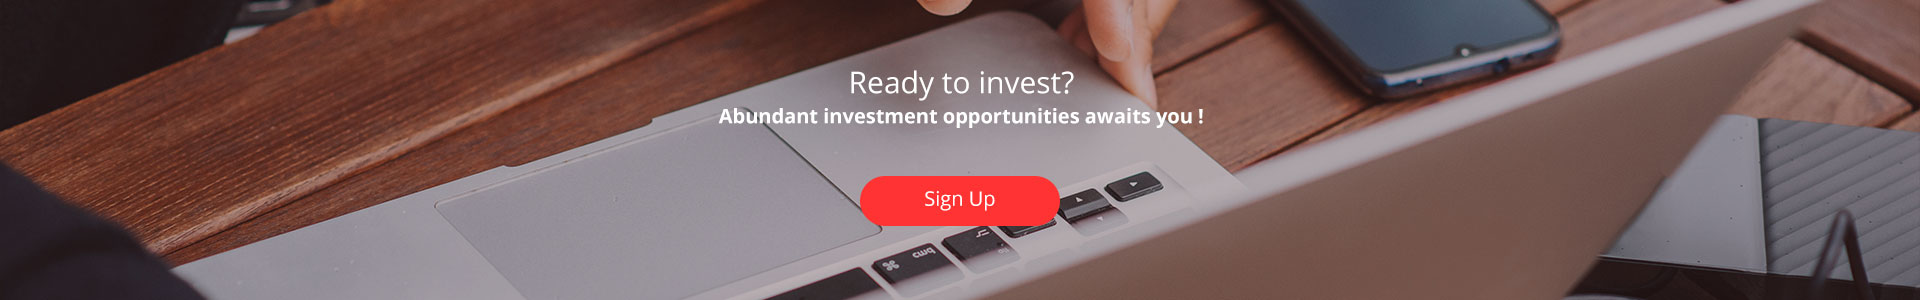 investor_signup